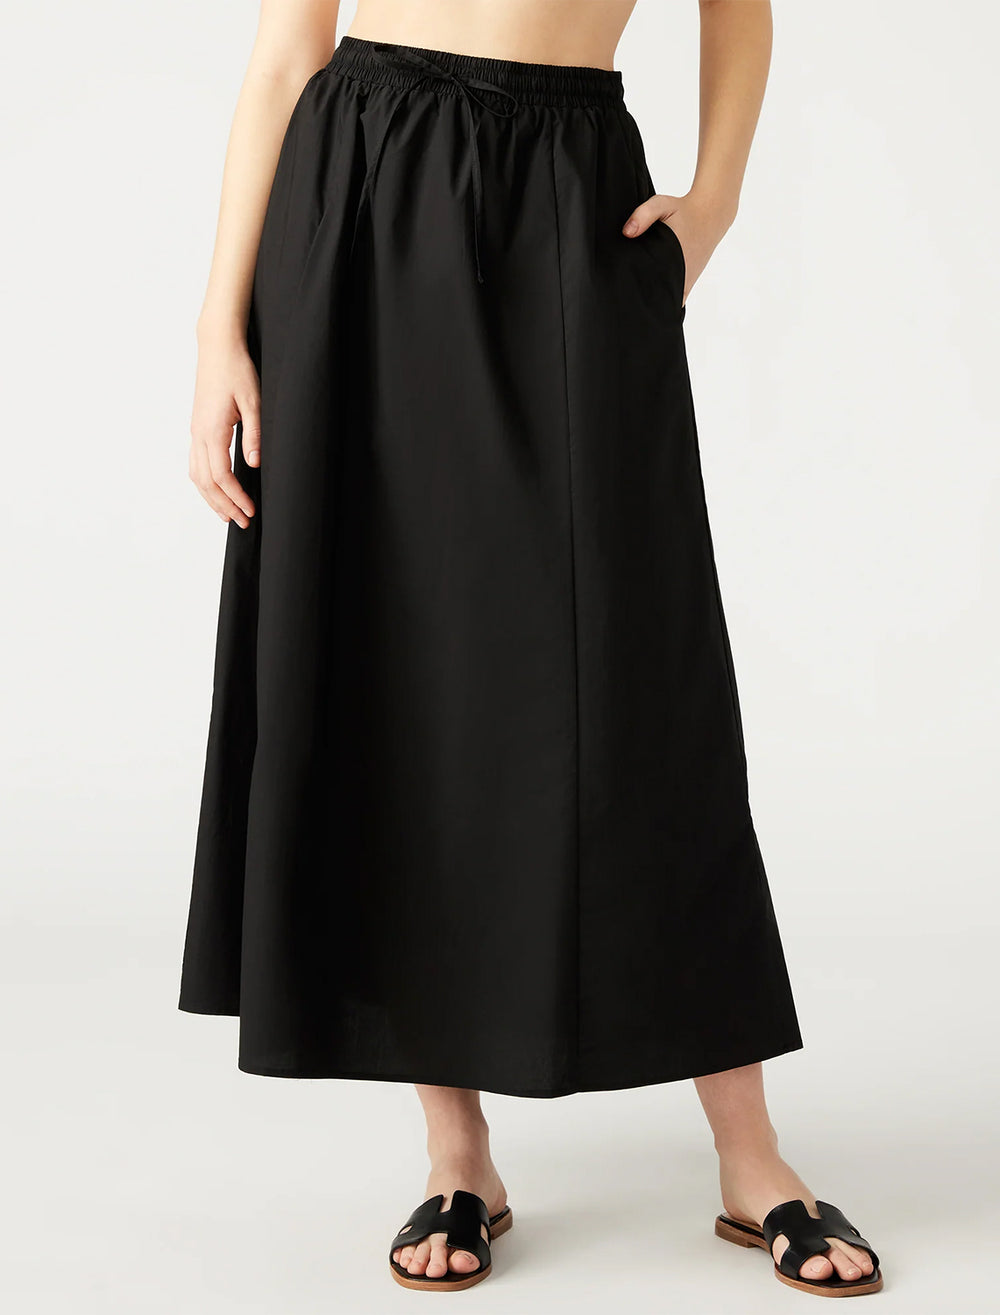 Model wearing Steve Madden's sunny skirt in black.